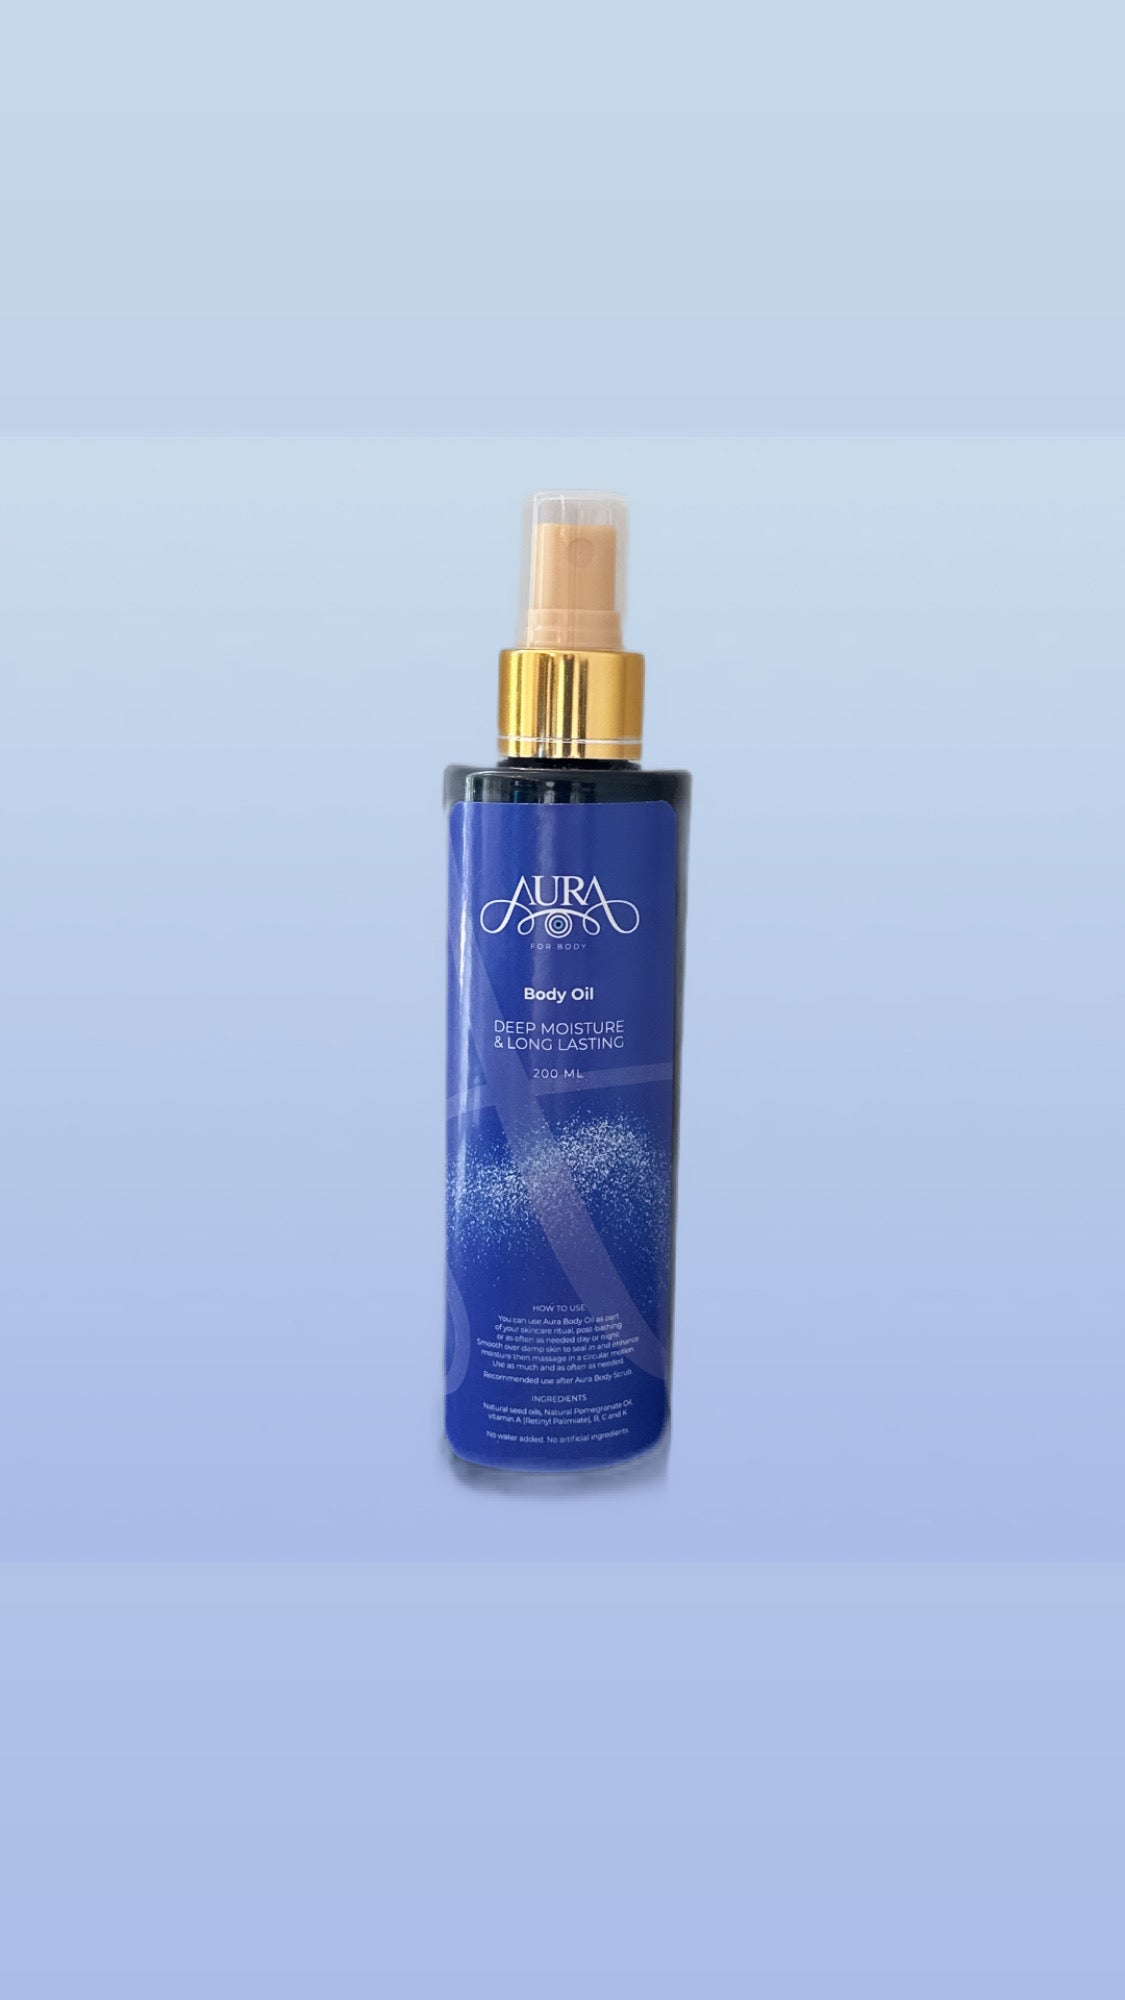 Aura Daily Moisturizing Oil Mist for Rough Sensitive Skin for all skin types - 6.7 fl oz